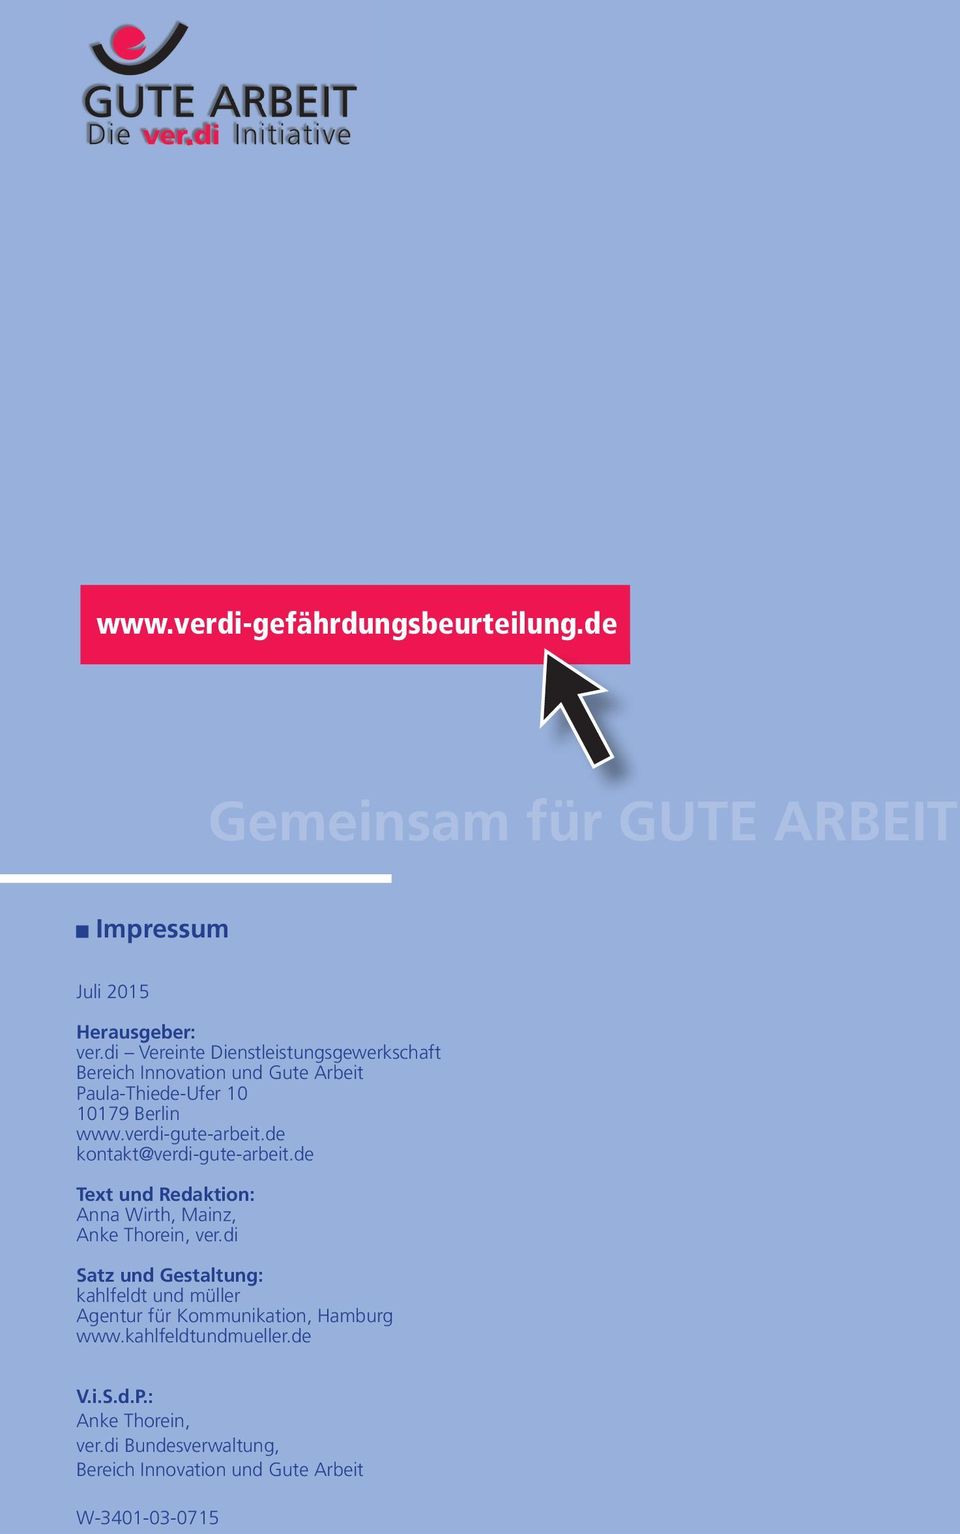 verdi-gute-arbeit.de kontakt@verdi-gute-arbeit.de Text und Redaktion: Anna Wirth, Mainz, Anke Thorein, ver.